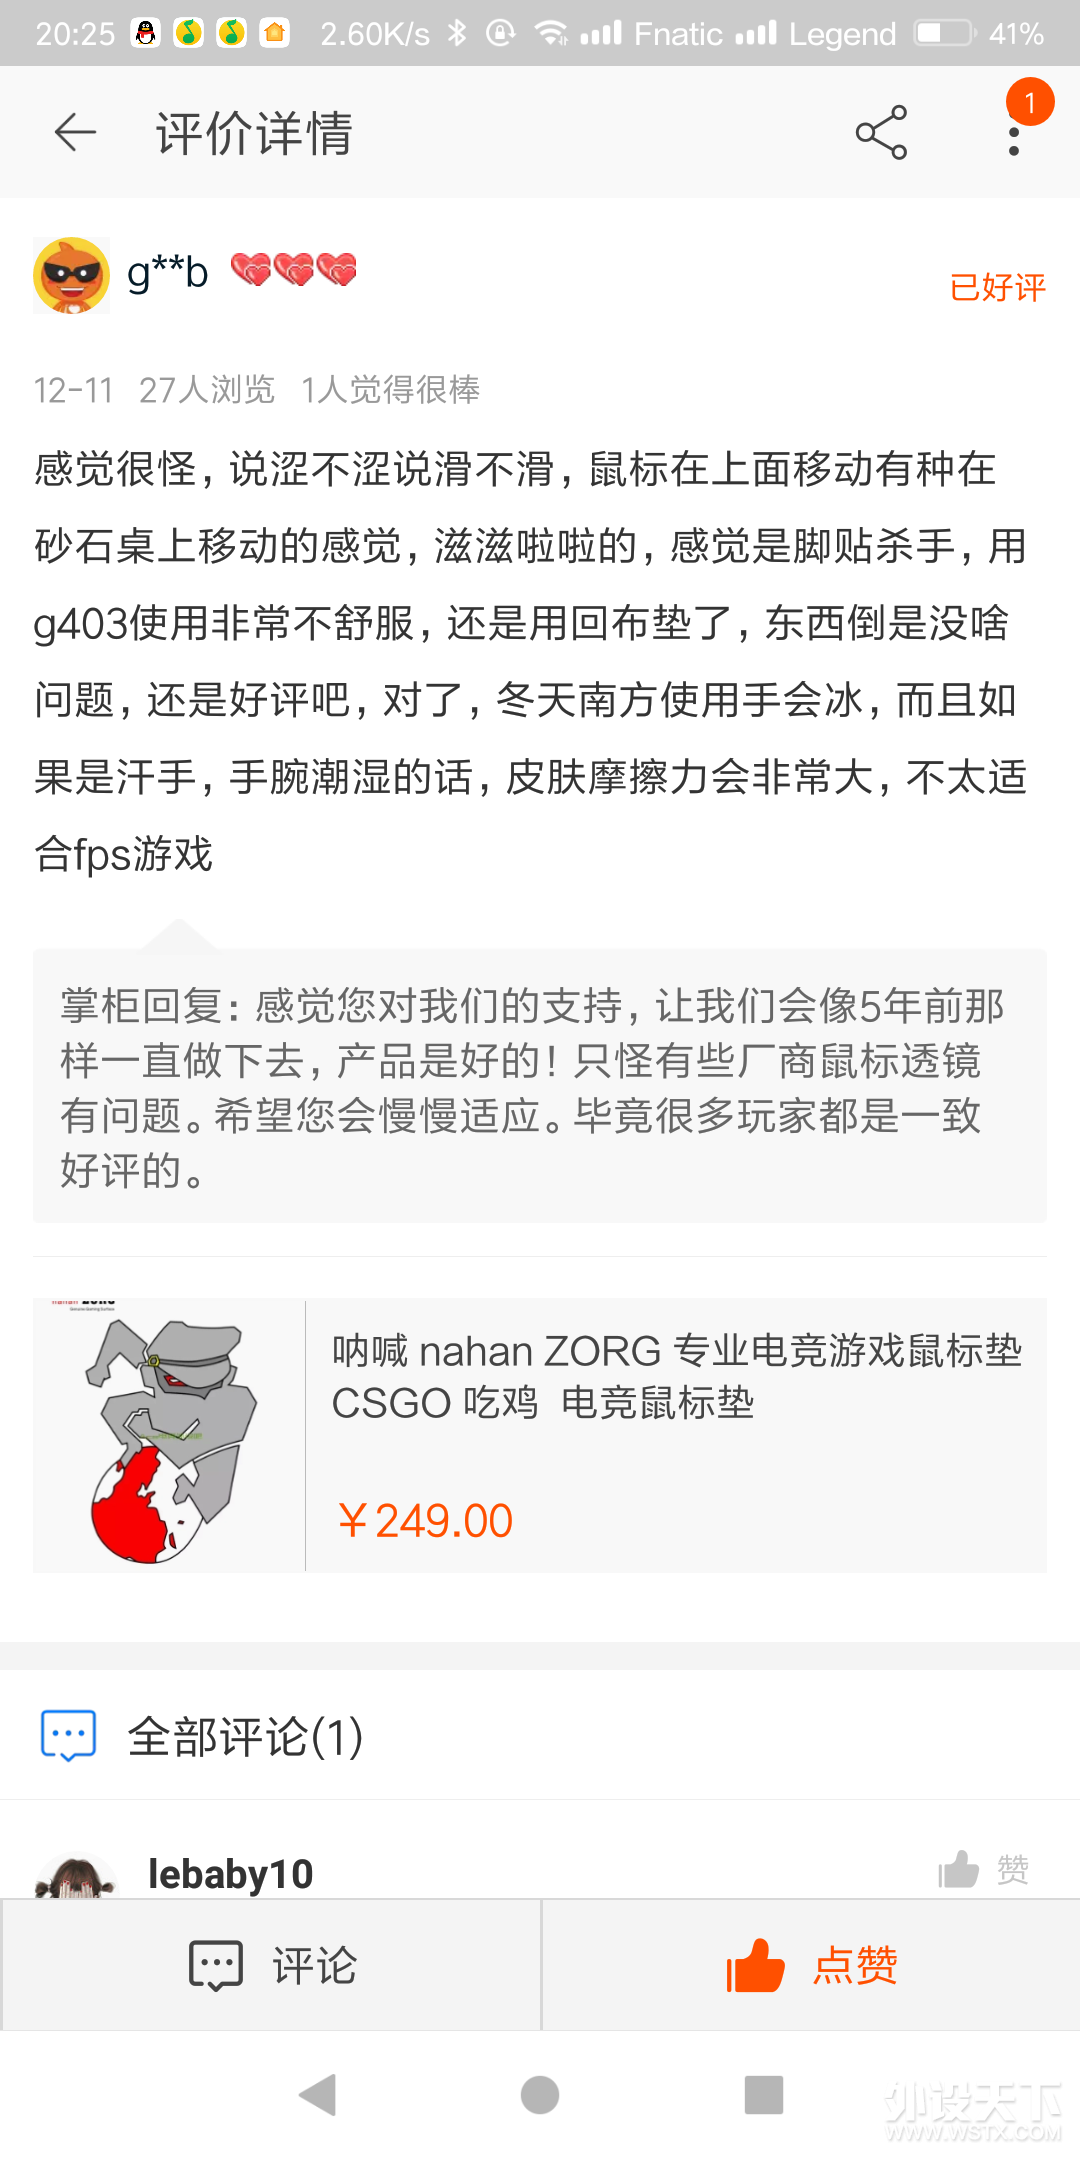 Screenshot_2017-12-24-20-25-45-274_com.taobao.tao.png